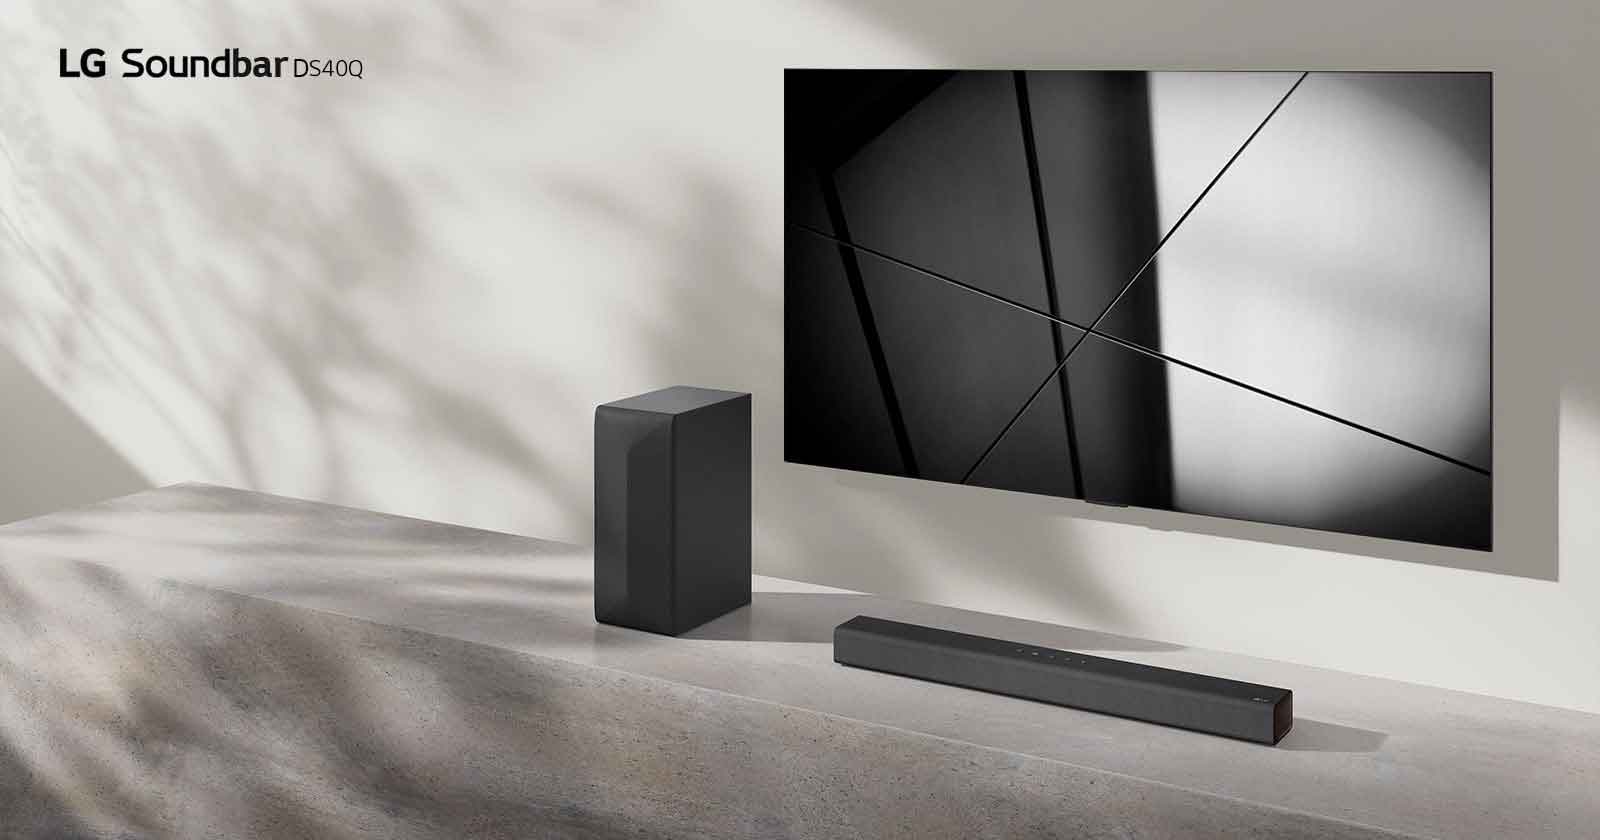 Die LG Soundbar DS40Q und ein LG TV stehen zusammen in einem Wohnzimmer. Das Fernsehgerät ist angeschaltet, ein geometrisches Bild wird angezeigt.